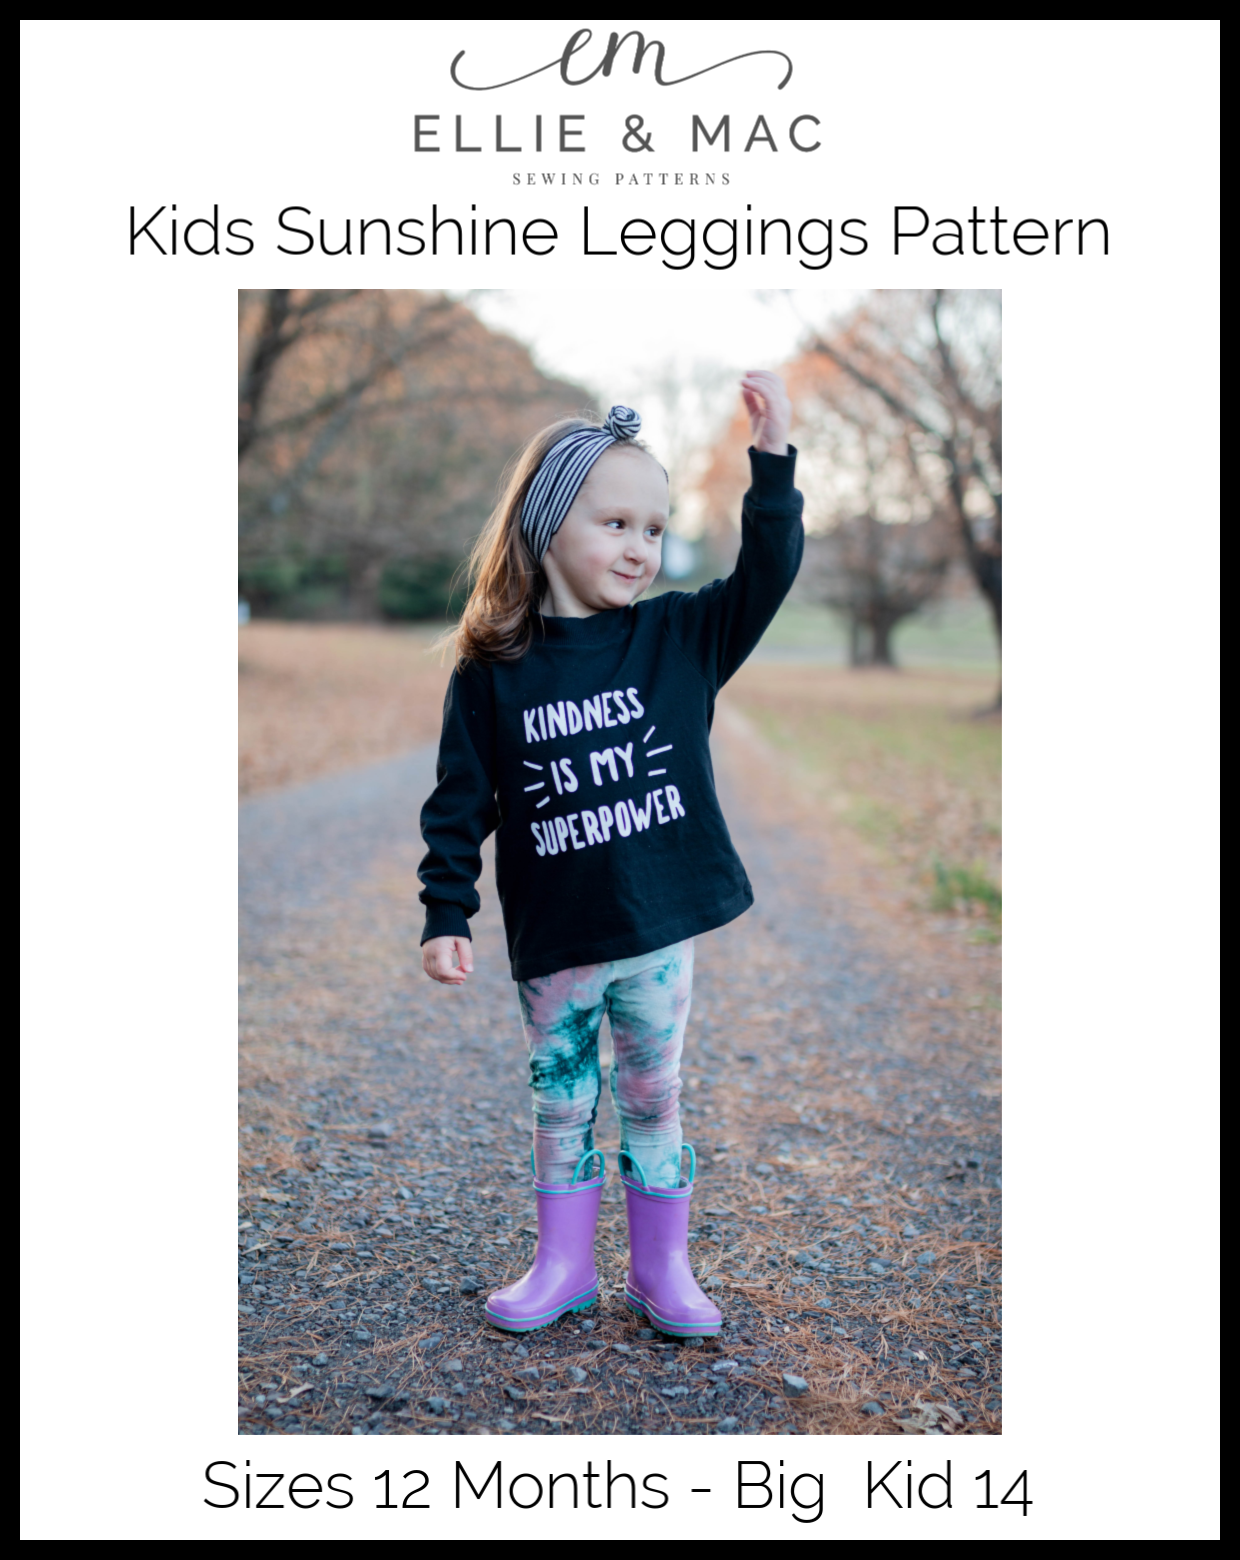 25 Leggings Sewing Patterns for Women, Kids, Men (9 FREE!)